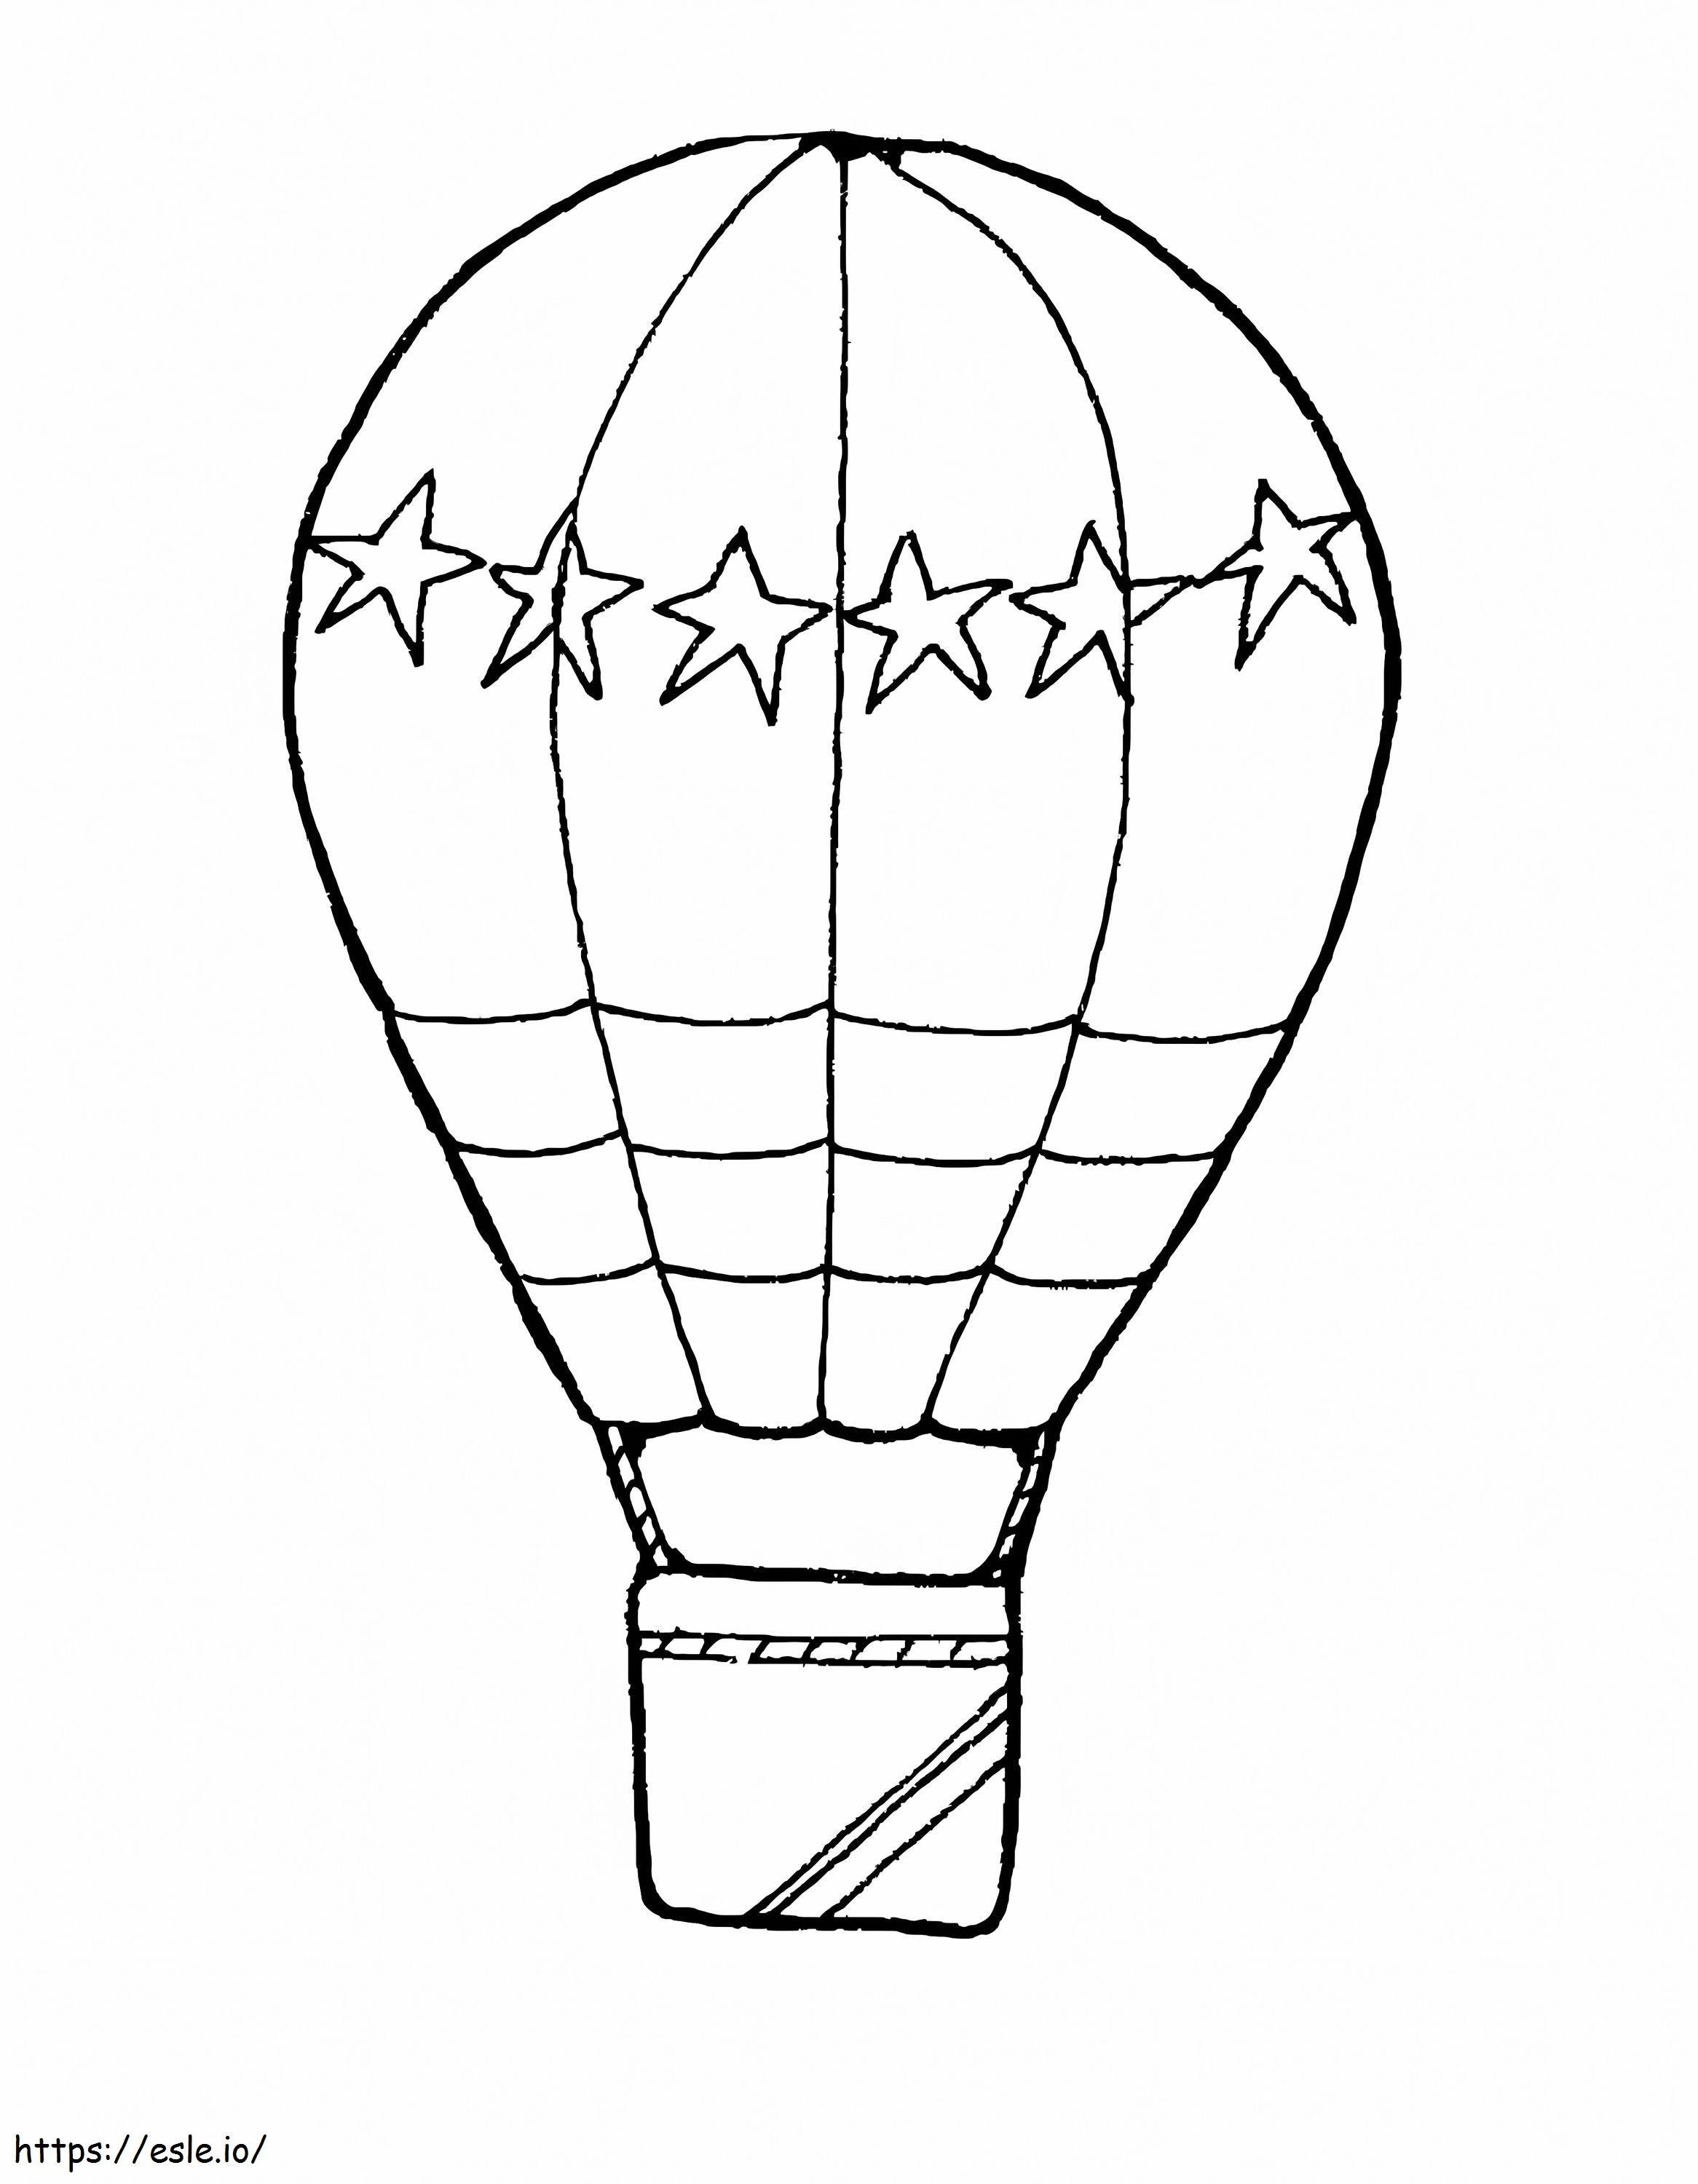 Heißluftballon-Zeichnung ausmalbilder